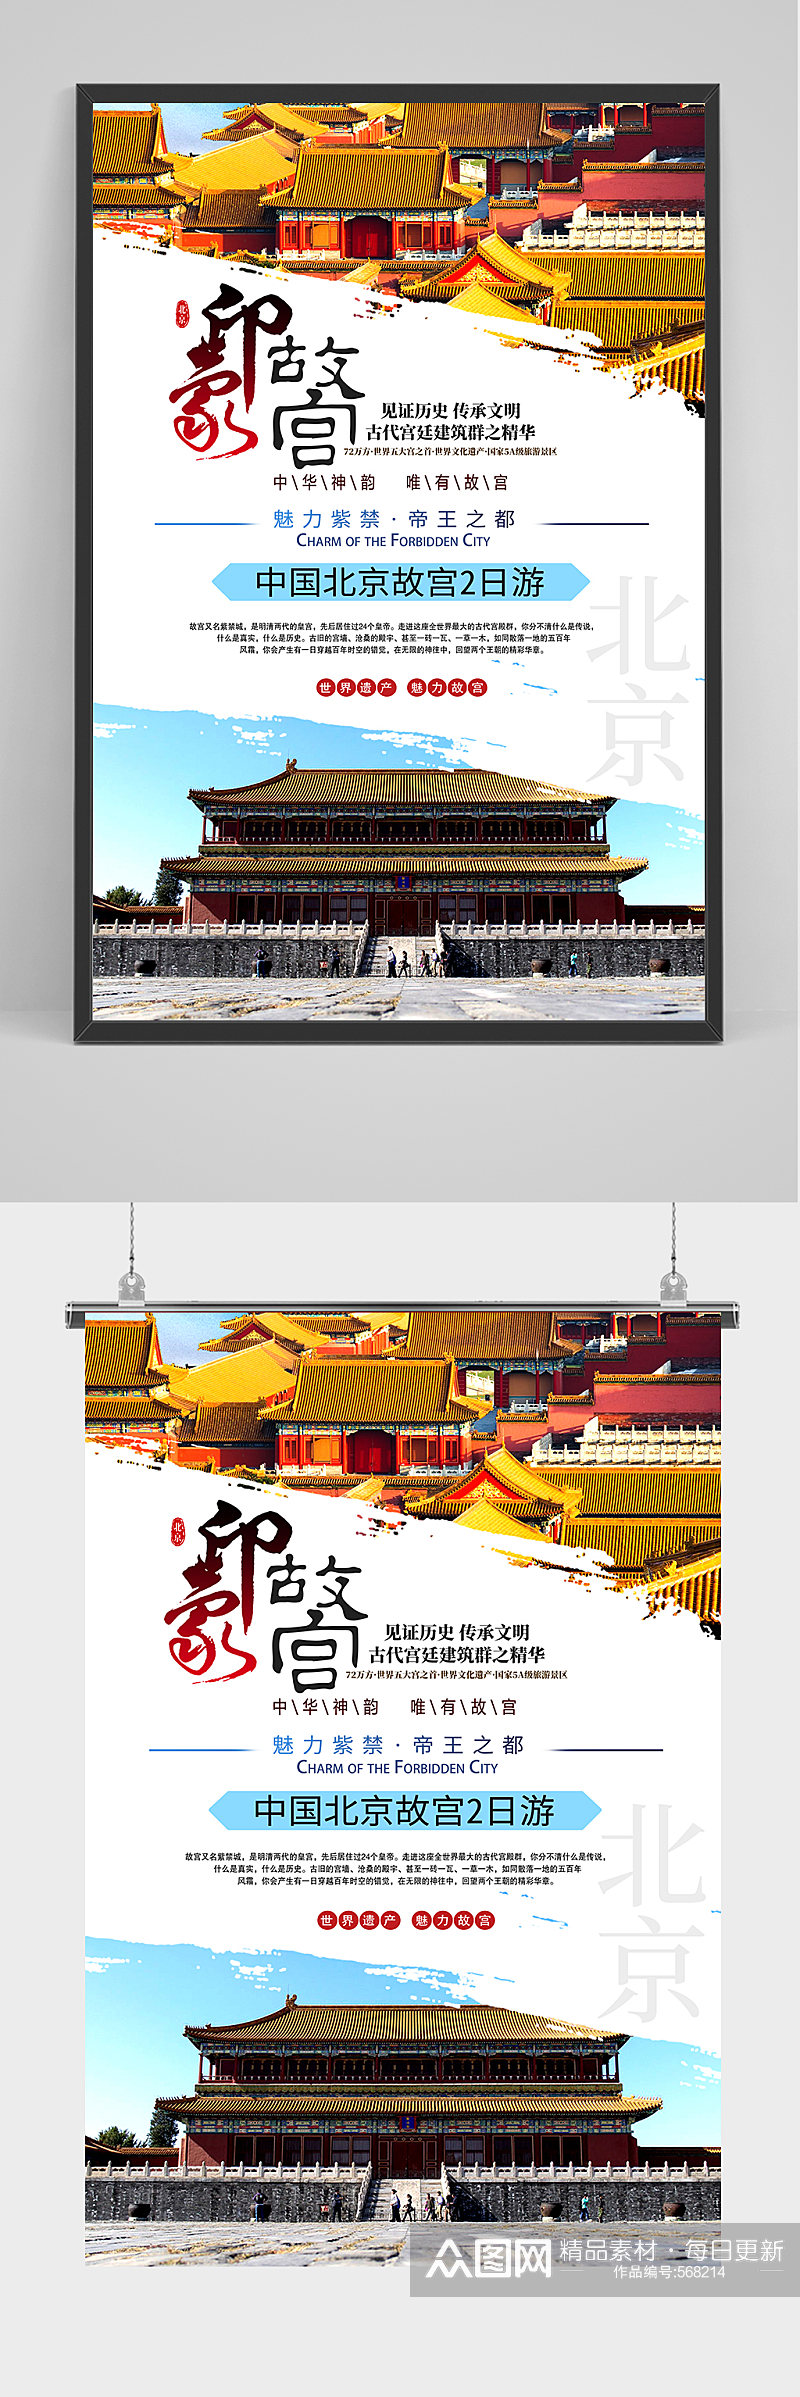 北京印象故宫旅游海报素材